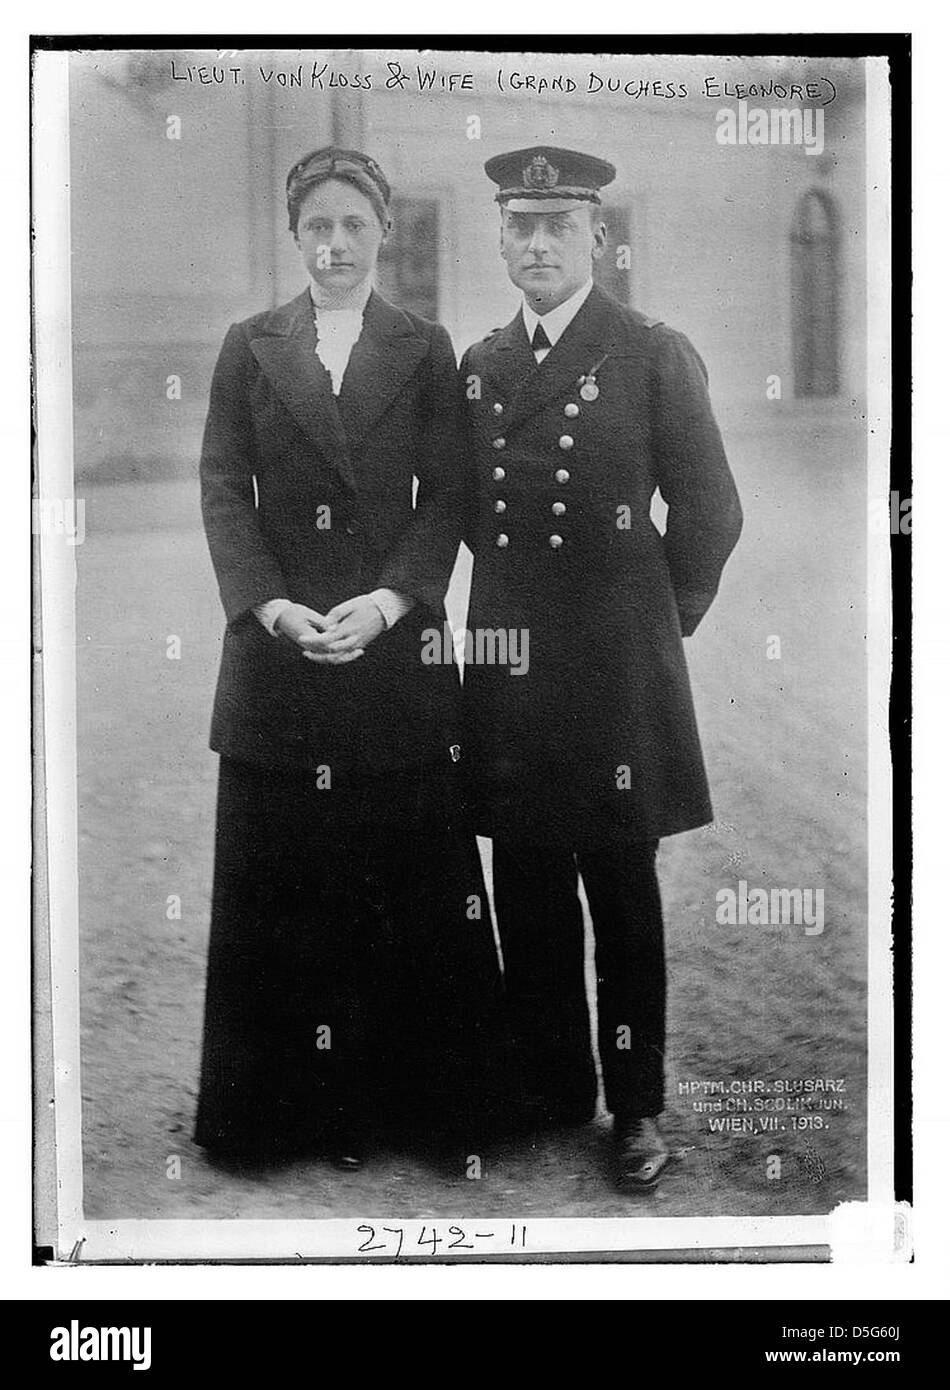 Lt. Von Kloss and wife (Grand Duchess Eleanore) (LOC) Stock Photo